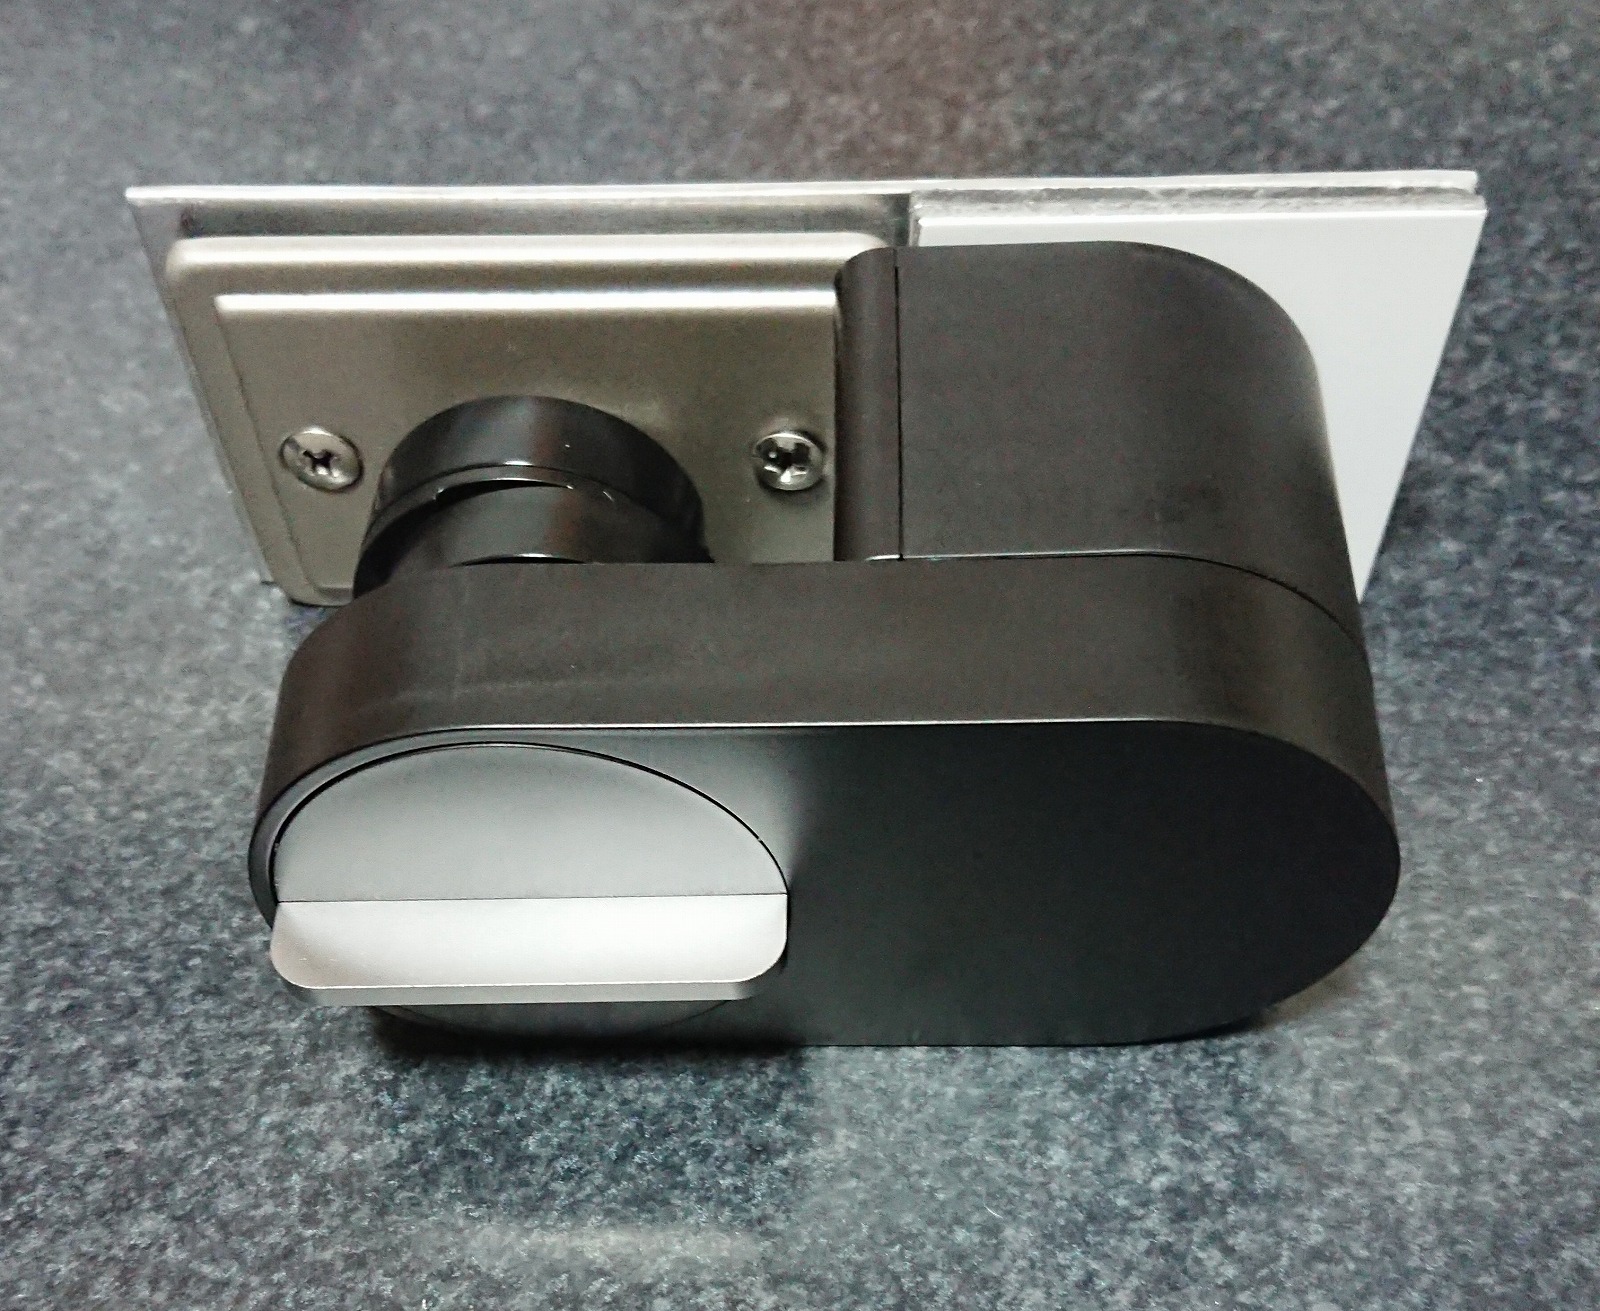 Qrio Lock Q-SL2を両面テープ貼りつけではなく、ねじ止め固定する